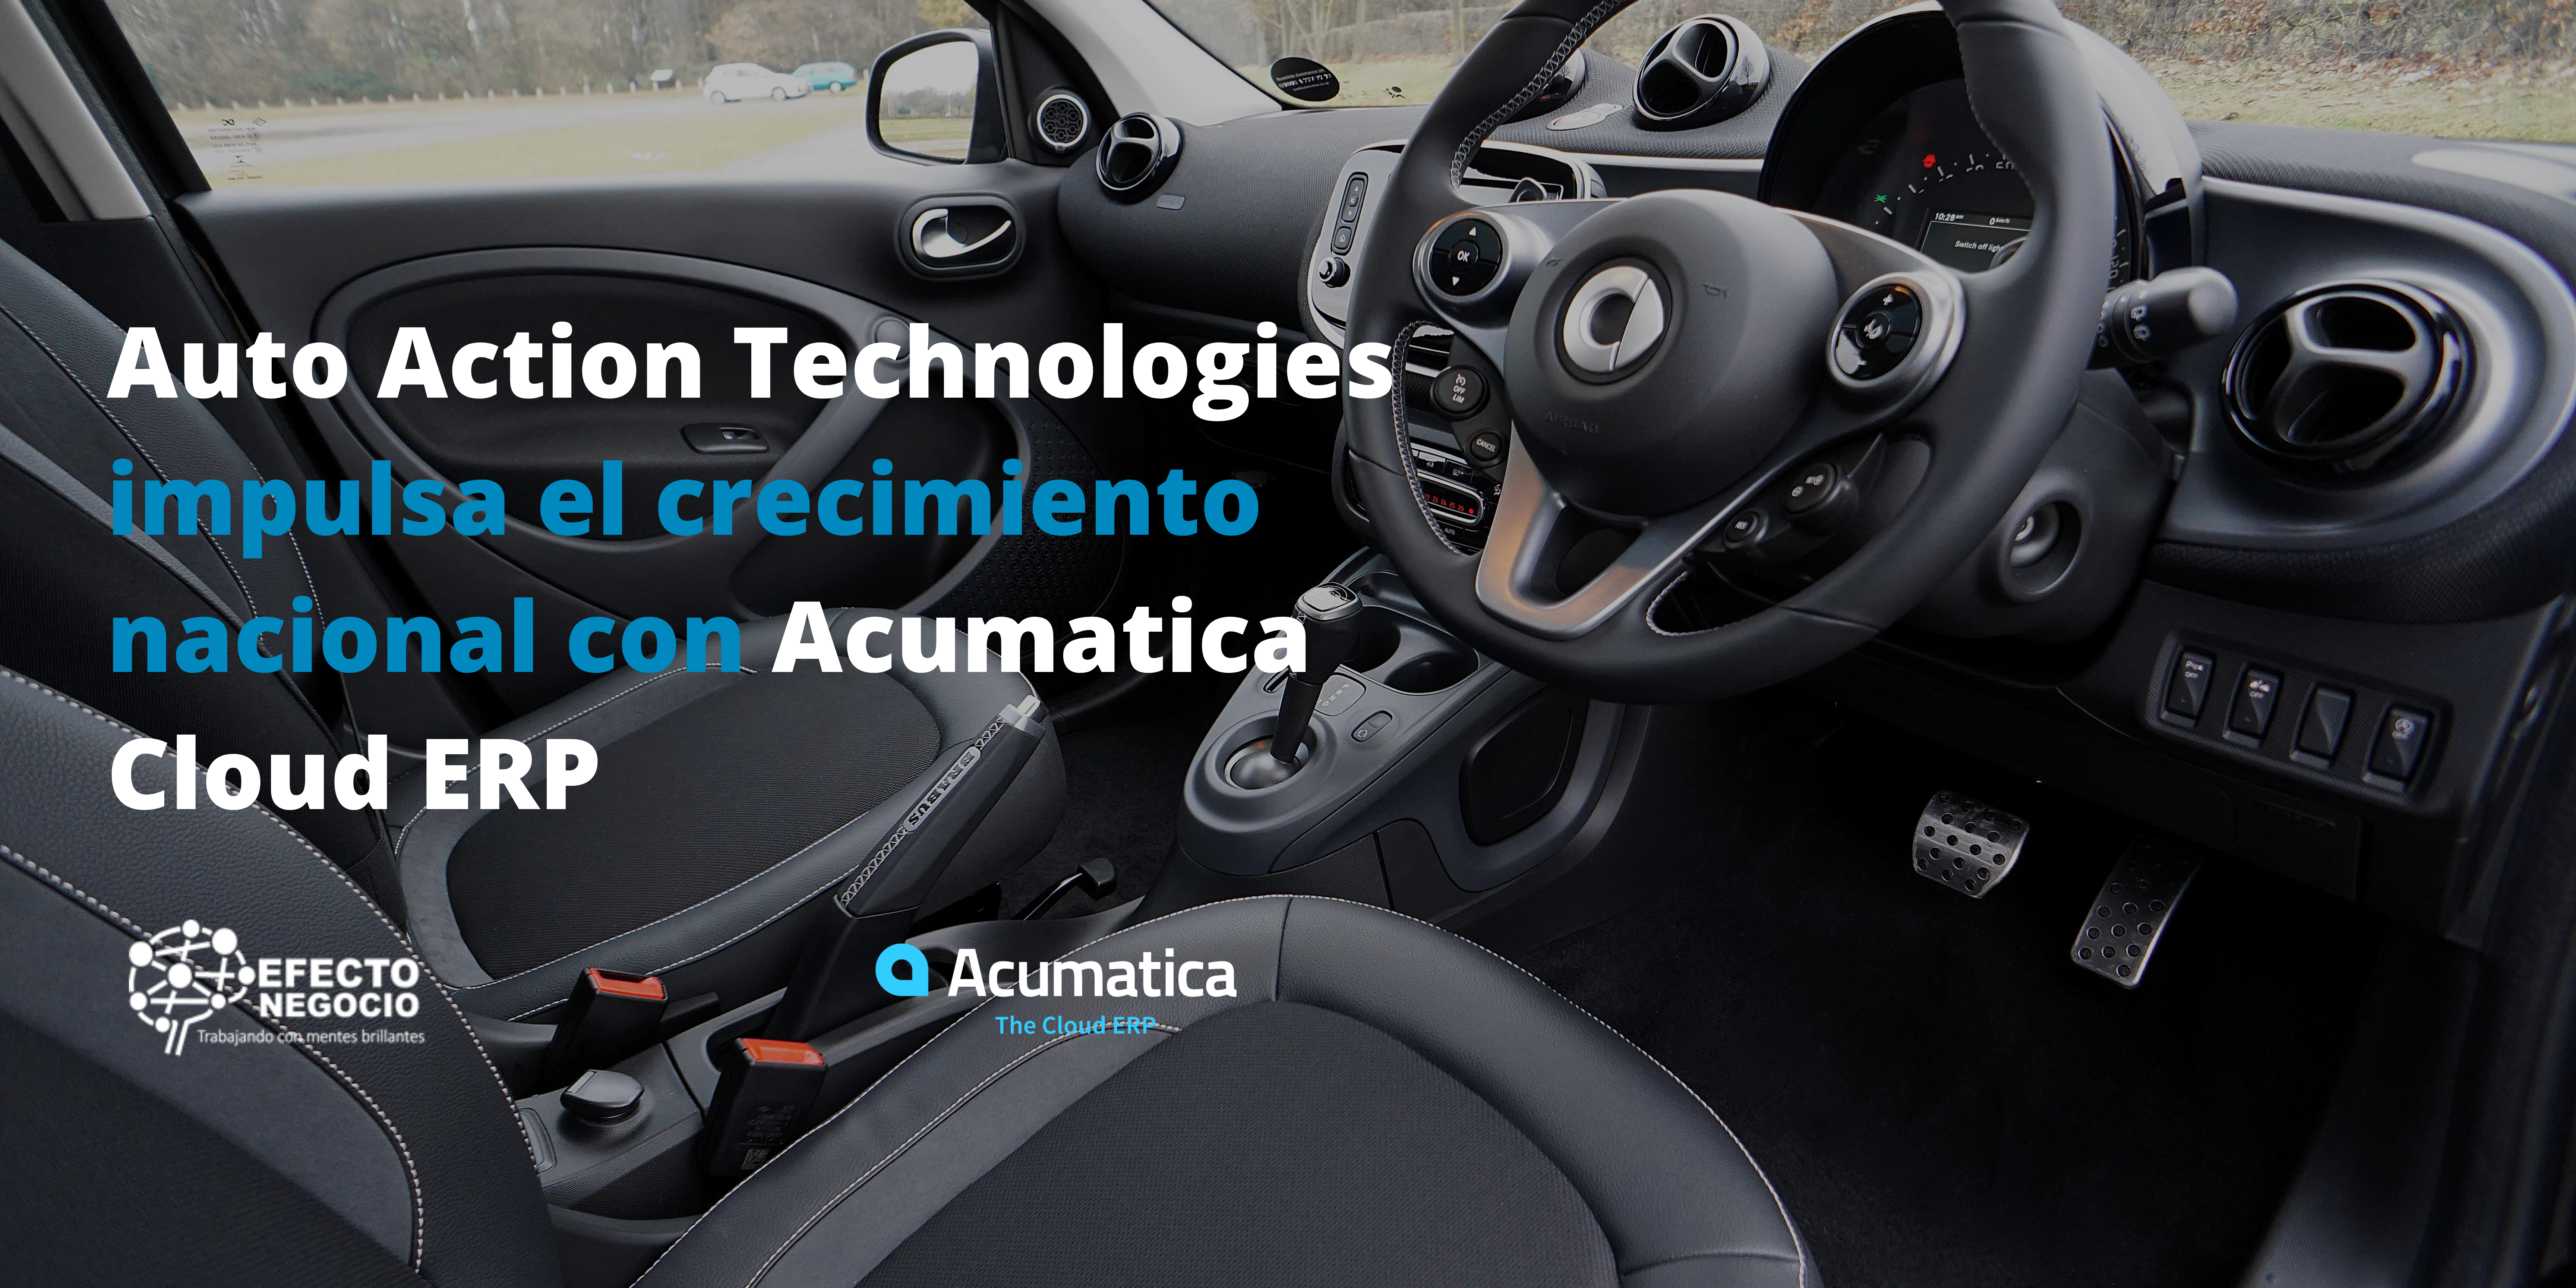 Auto Action Technologies impulsa el crecimiento nacional con Acumatica.